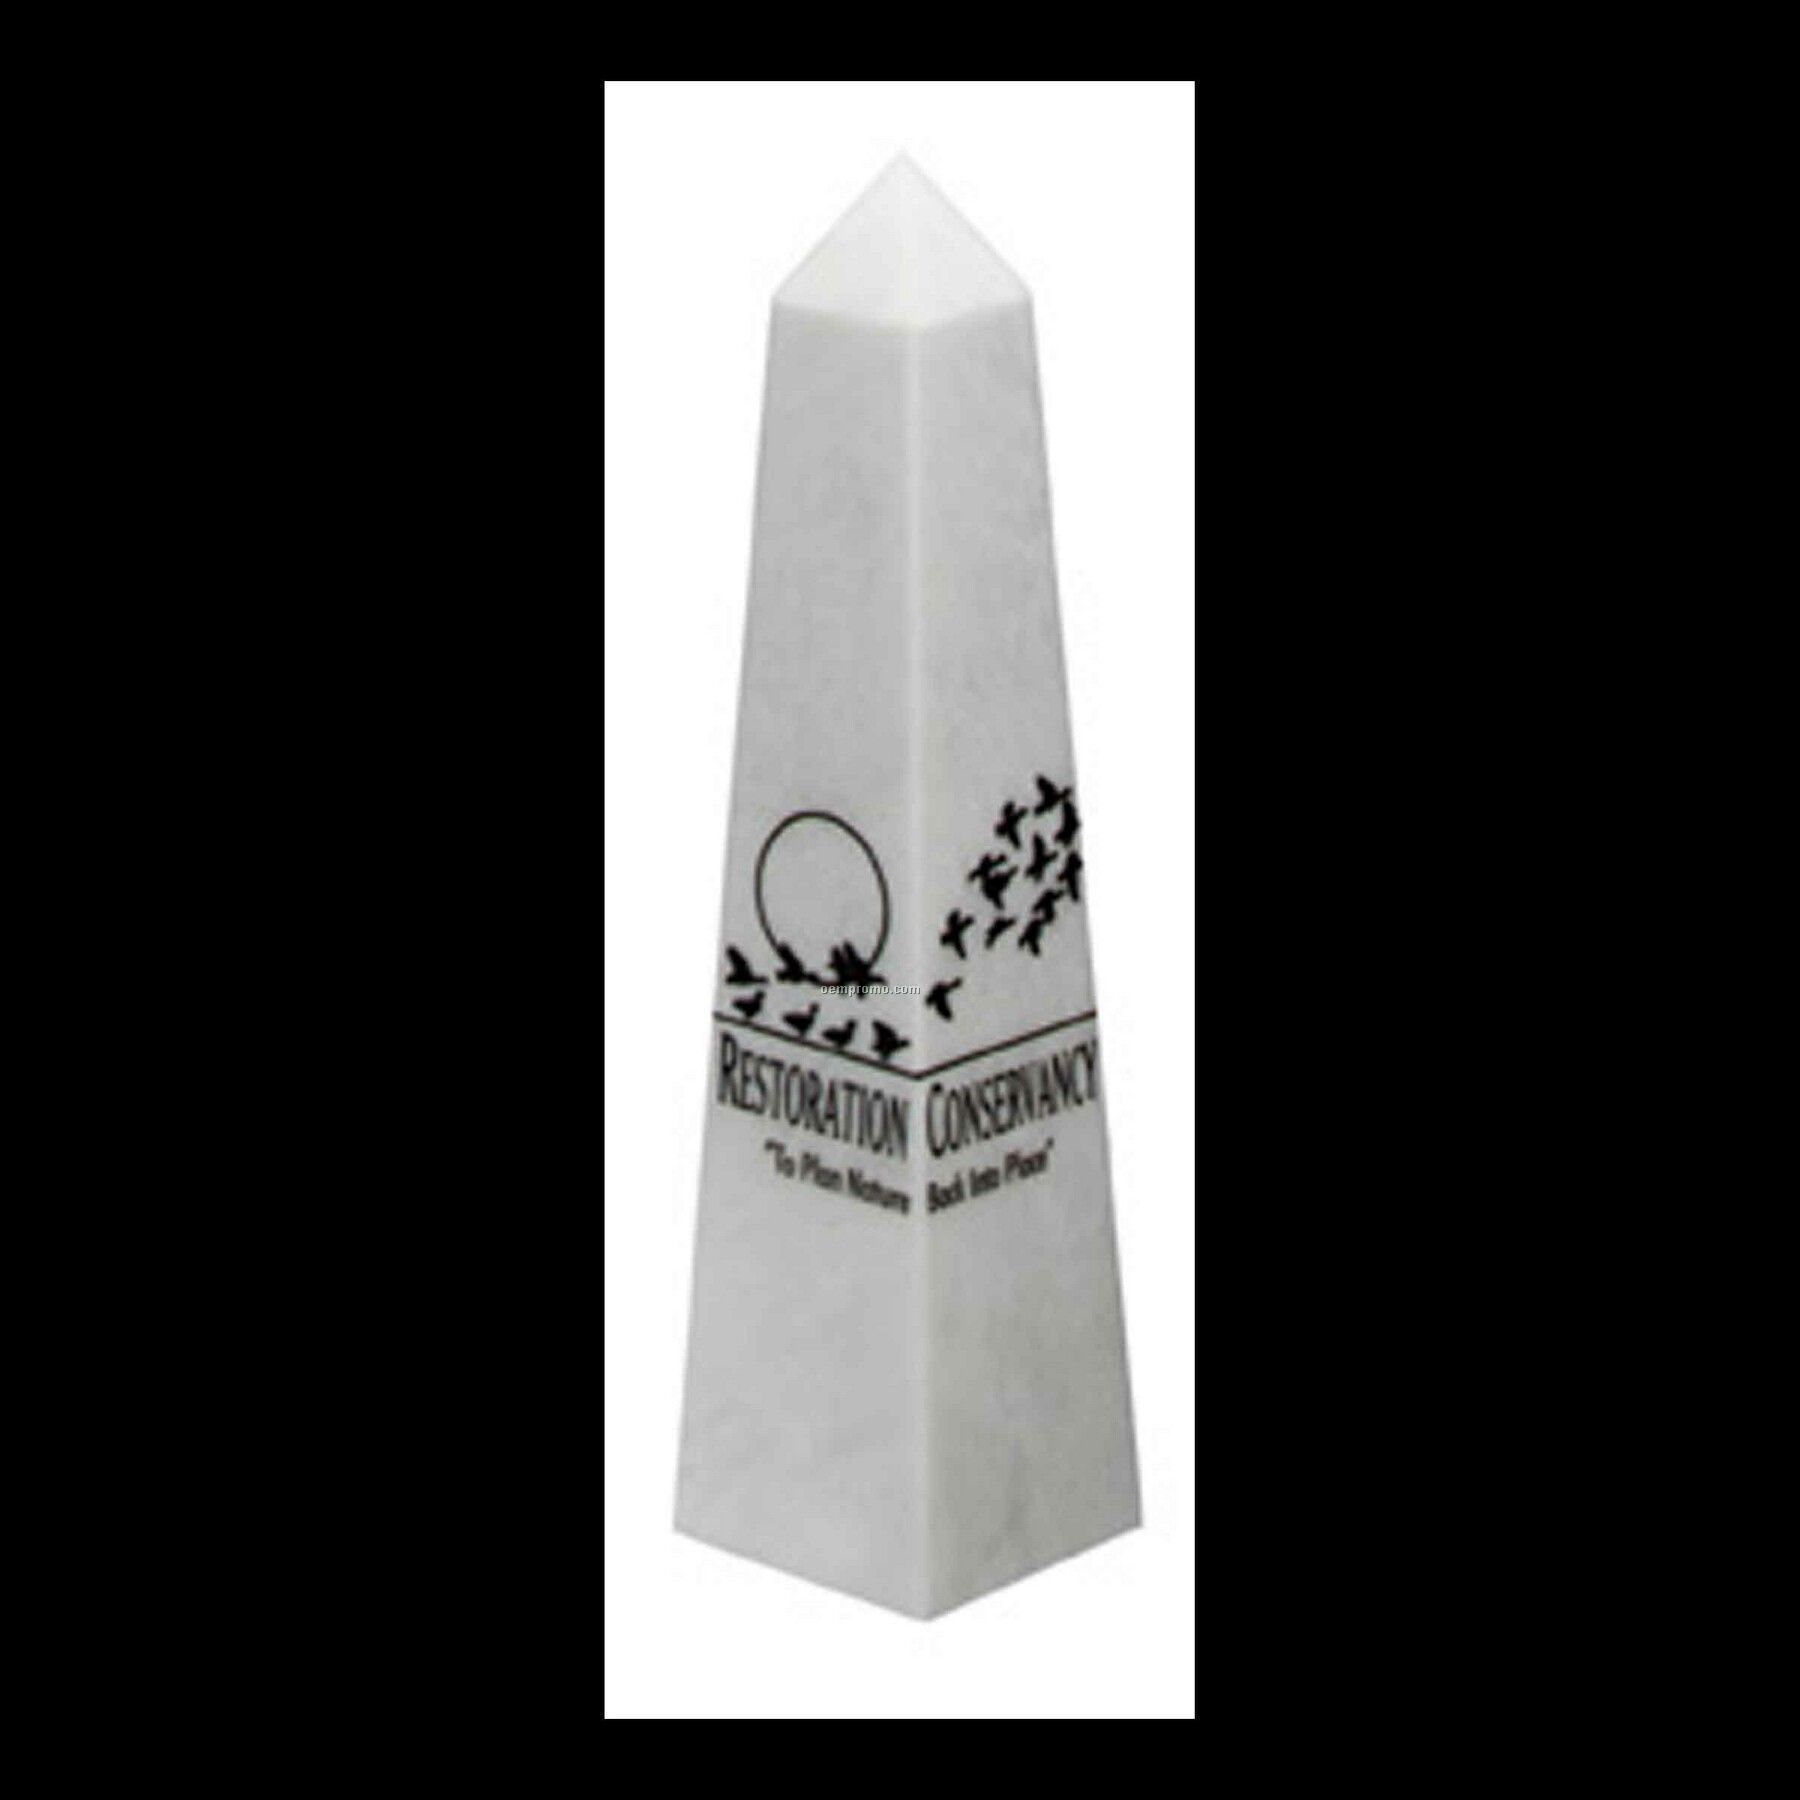 Medium-large White Marble Pinnacle Award